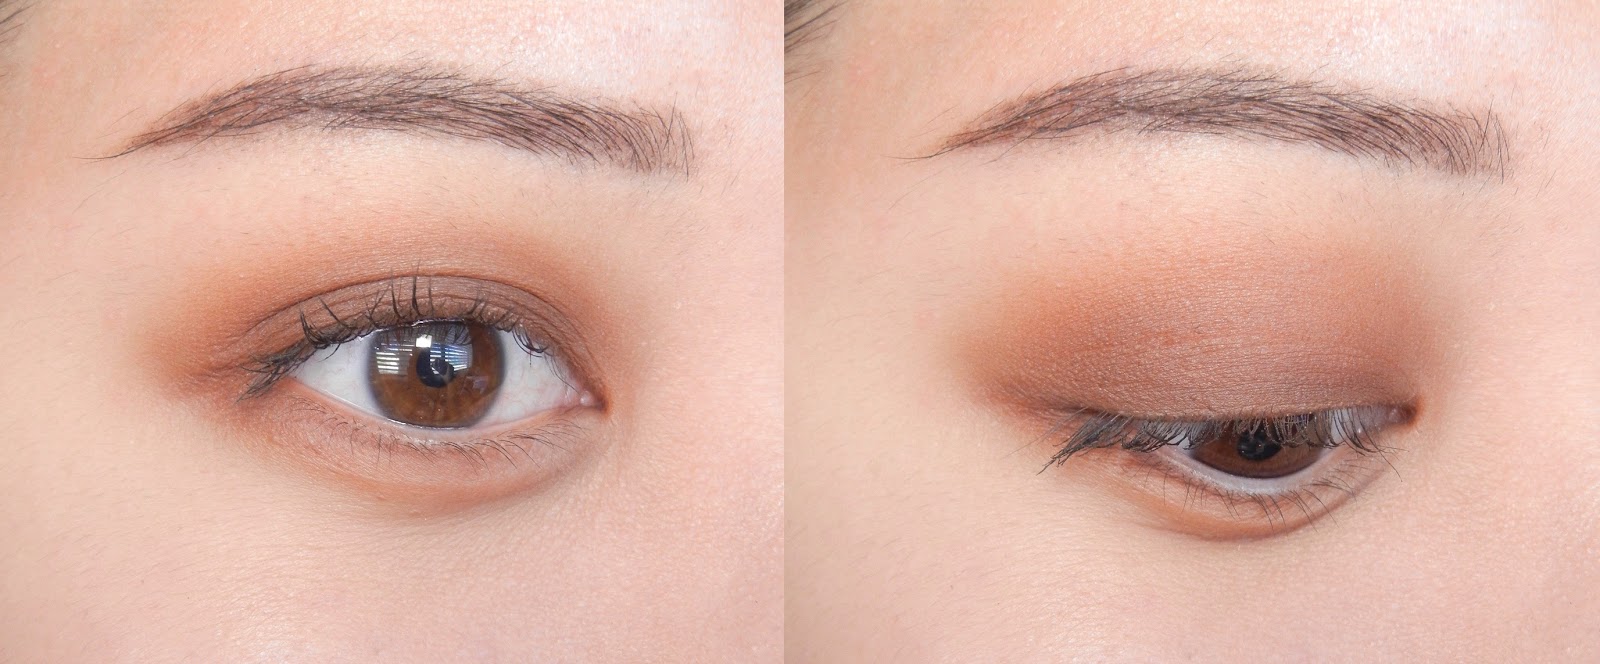 chanel quadra eyeshadow palettes review